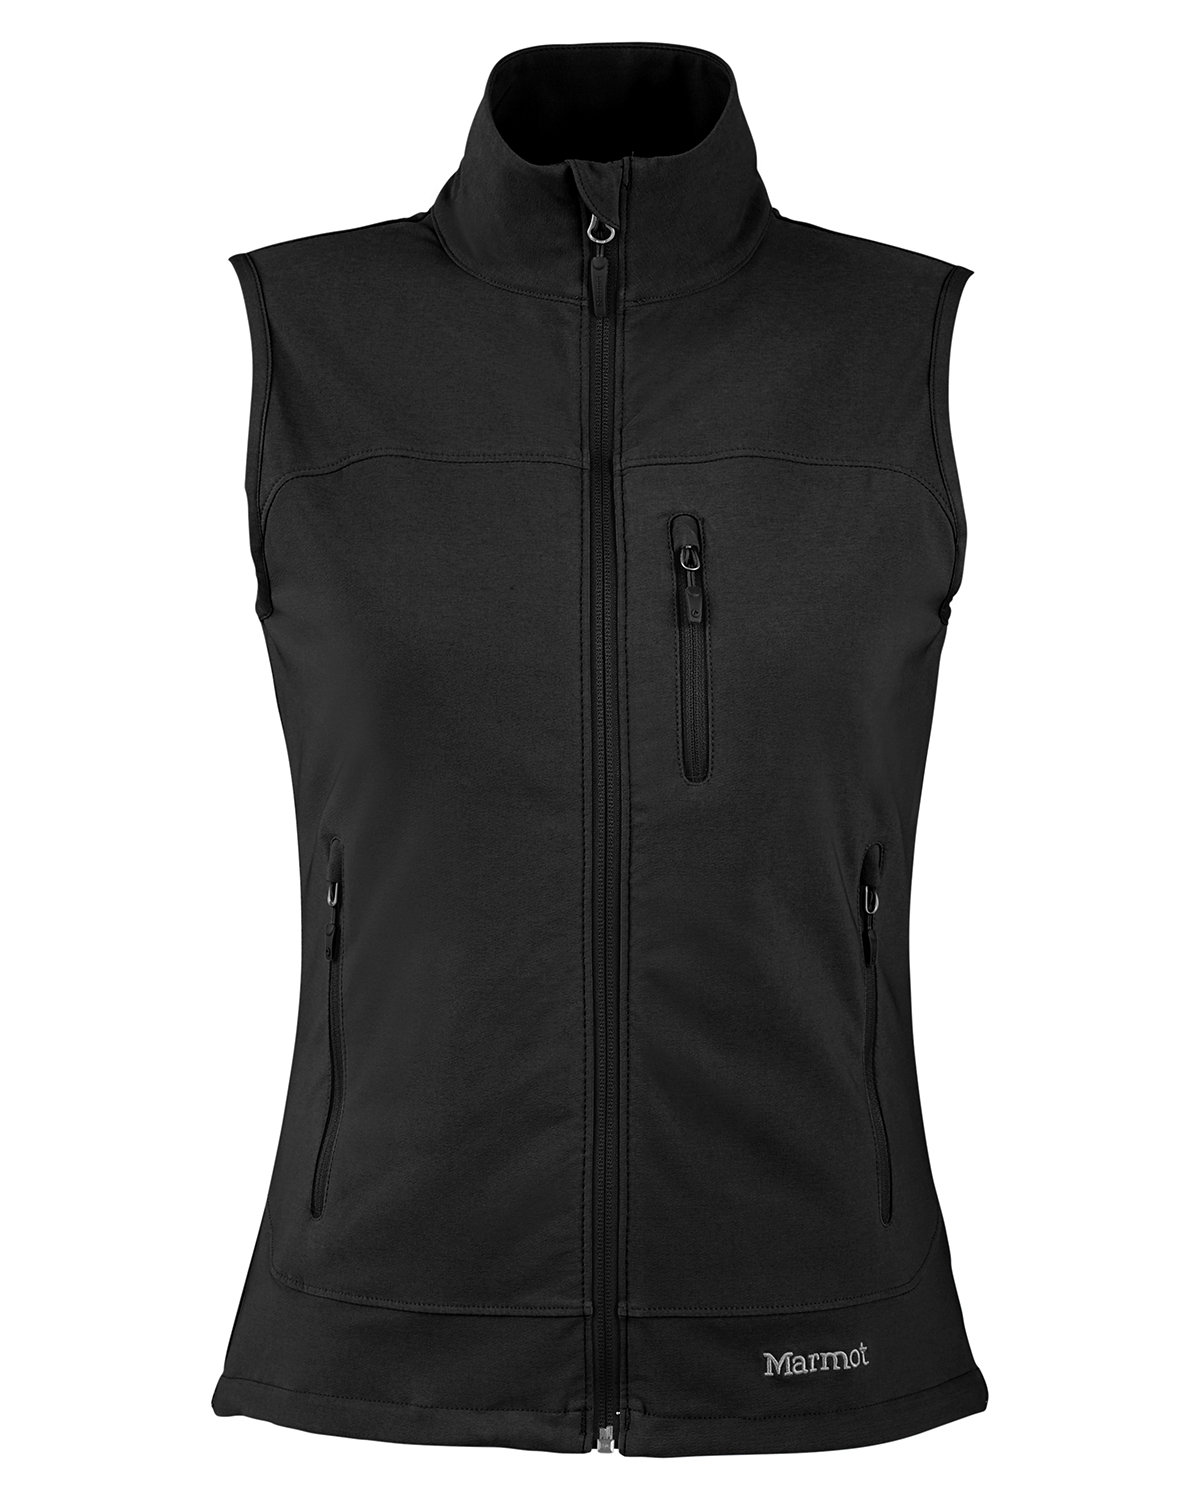 Marmot Ladies' Tempo Vest | Generic Site - Priced